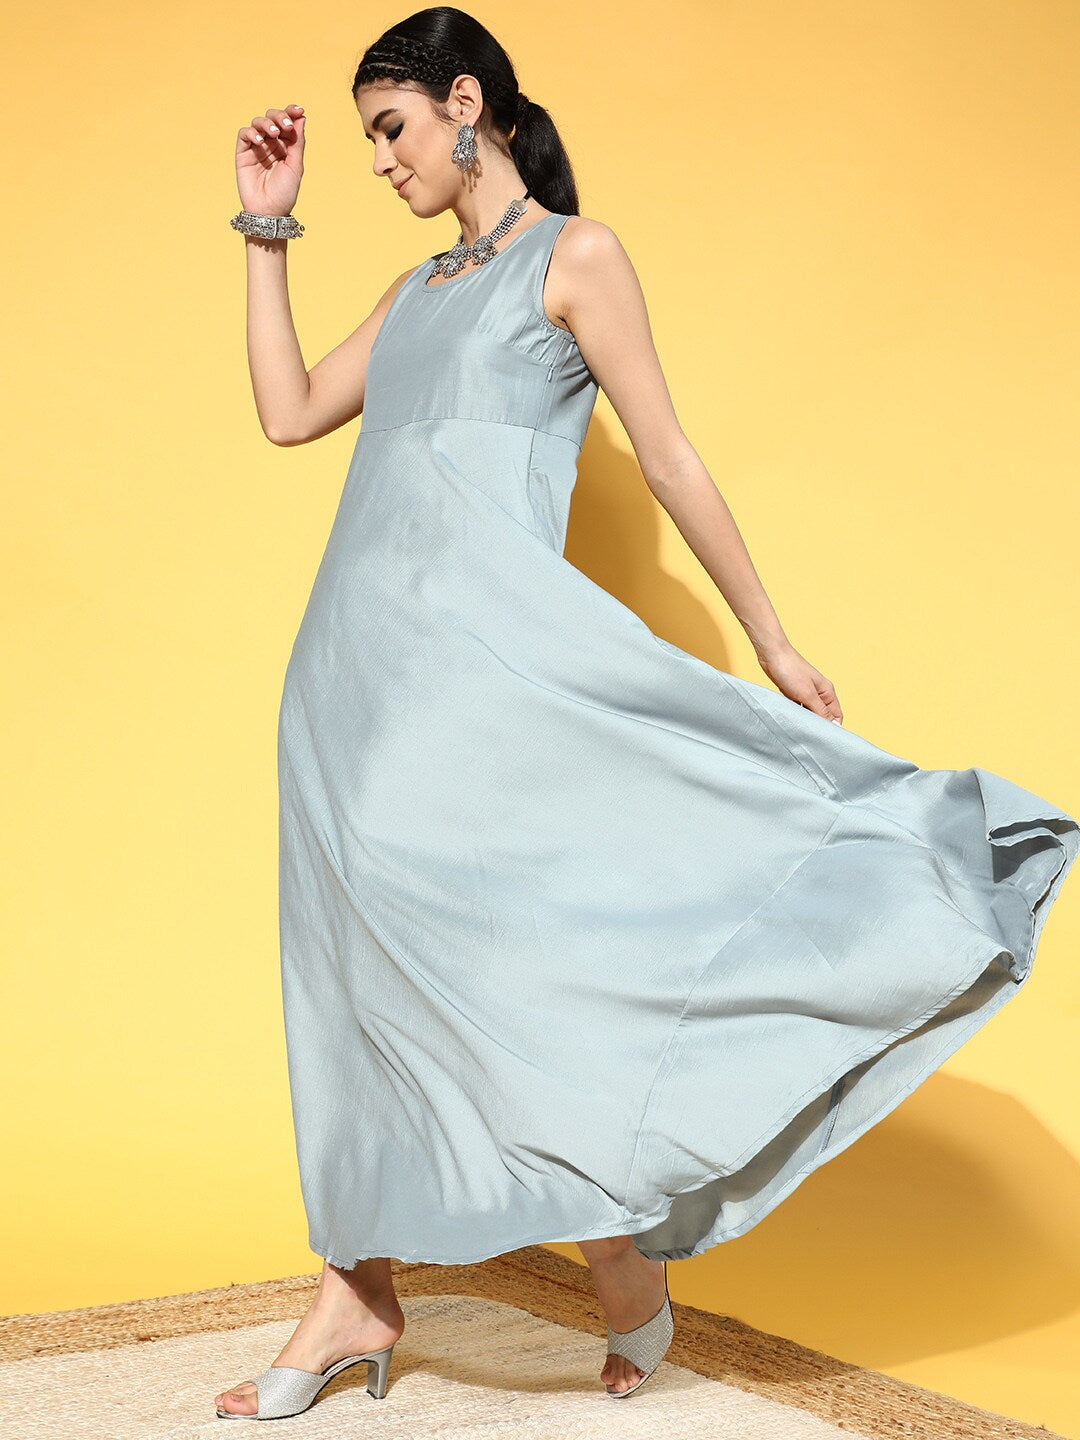 Women's Blue Schiffli Designed Maxi Dress With Jacket - Aks